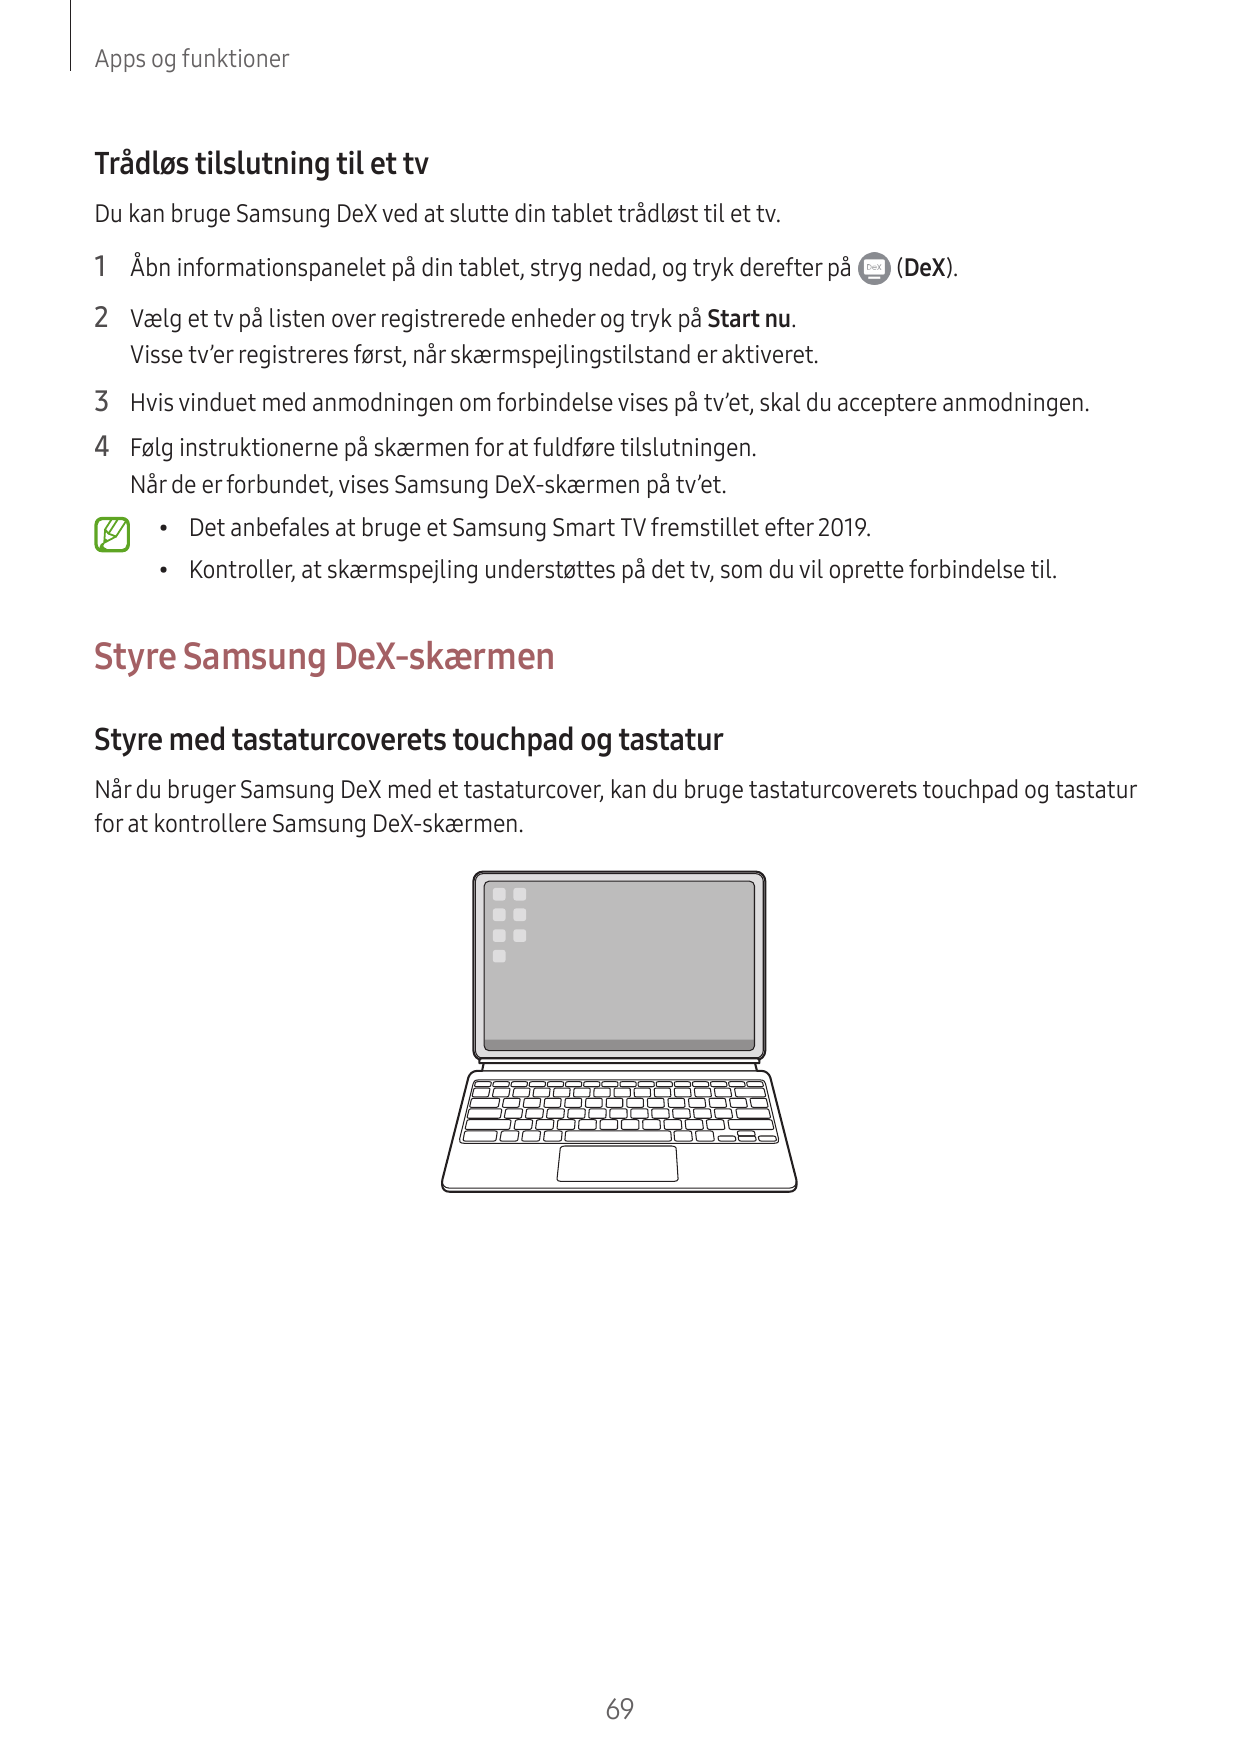 Apps og funktionerTrådløs tilslutning til et tvDu kan bruge Samsung DeX ved at slutte din tablet trådløst til et tv.1 Åbn inform